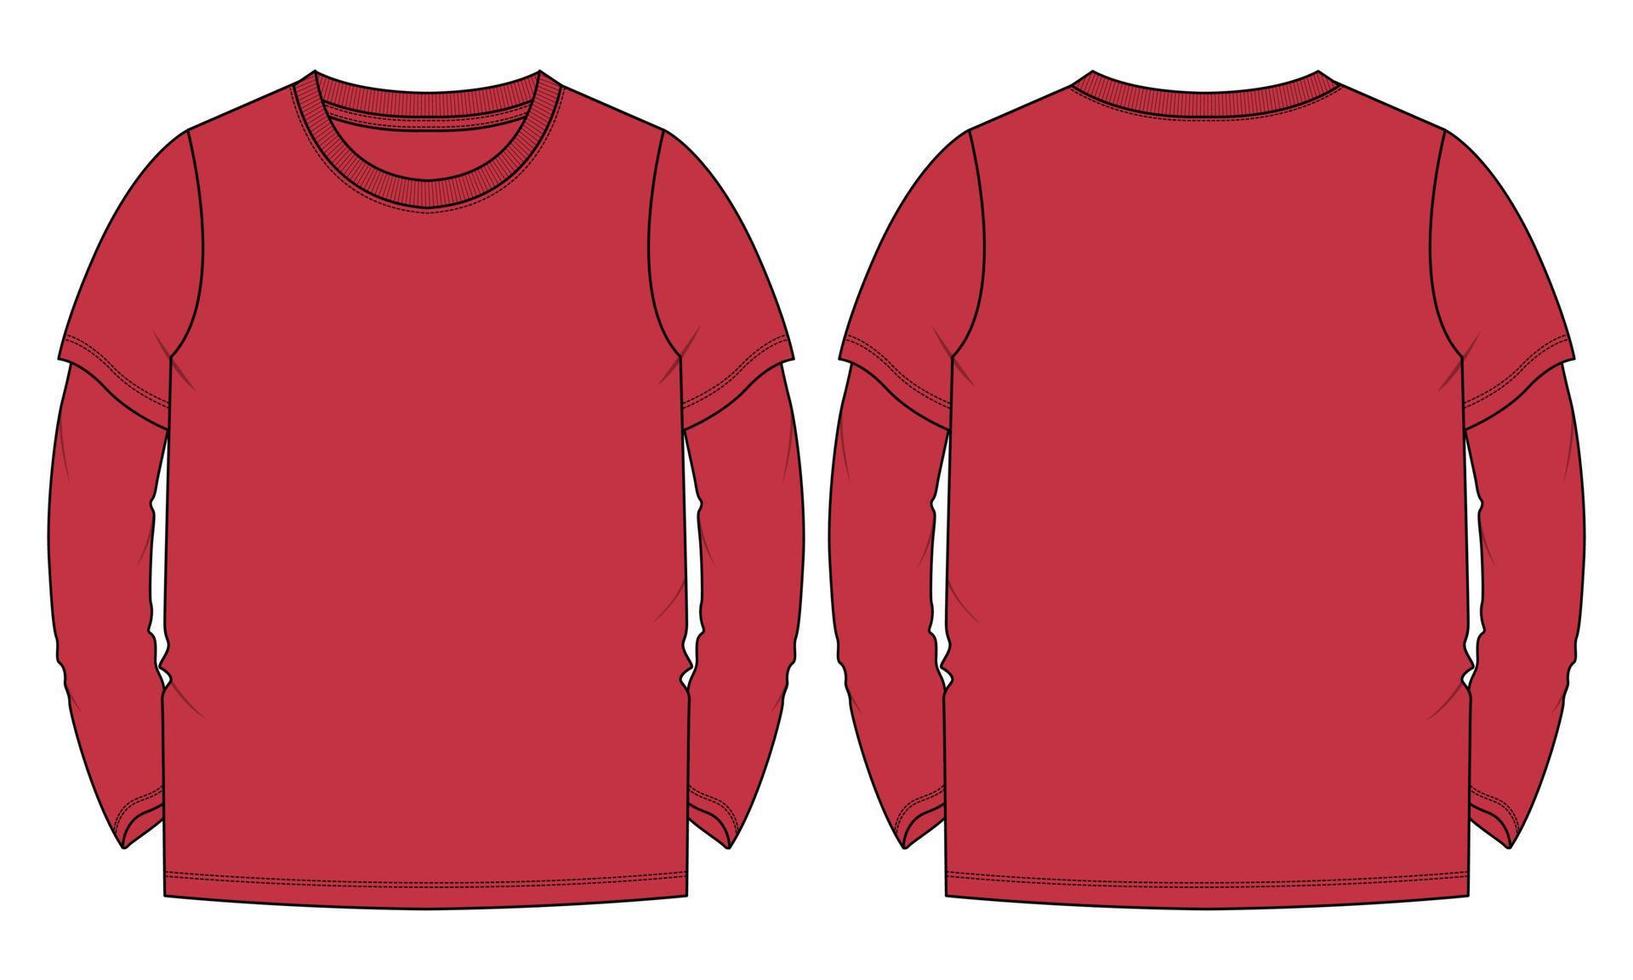 camiseta de manga longa técnica de moda desenho plano ilustração vetorial modelo de cor vermelha vetor